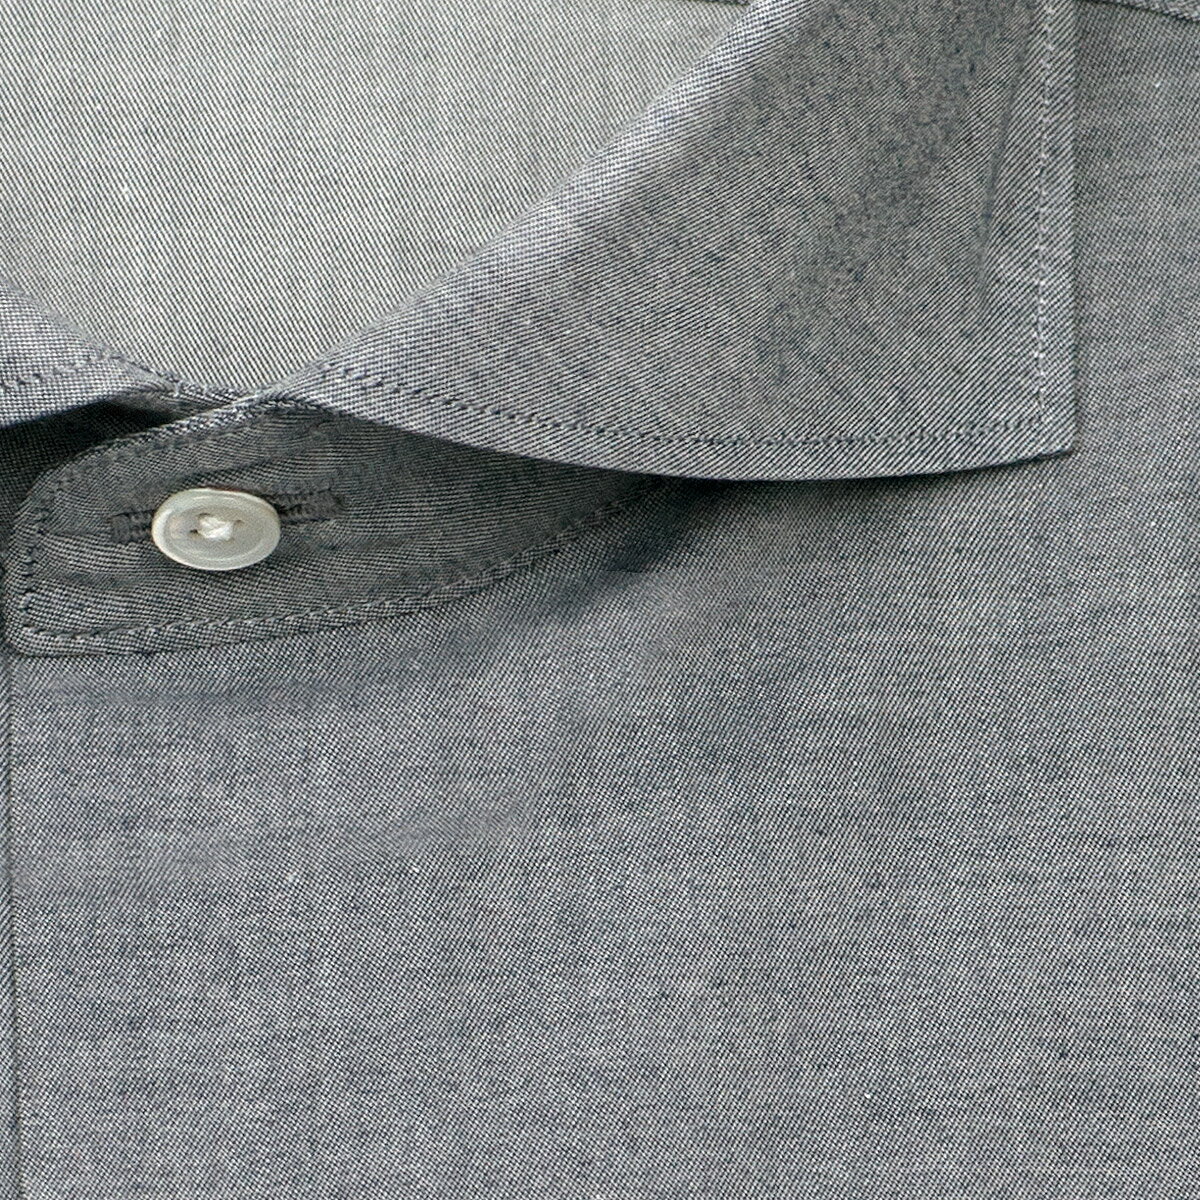 UNSQUARE 長袖 ワイシャツ メンズ グレーシャンブレー カッタウエイシャツ（ワイドカラー） 綿100% グレー 高級 上質  (zqd312-155)(sa1) | CHOYA シャツ